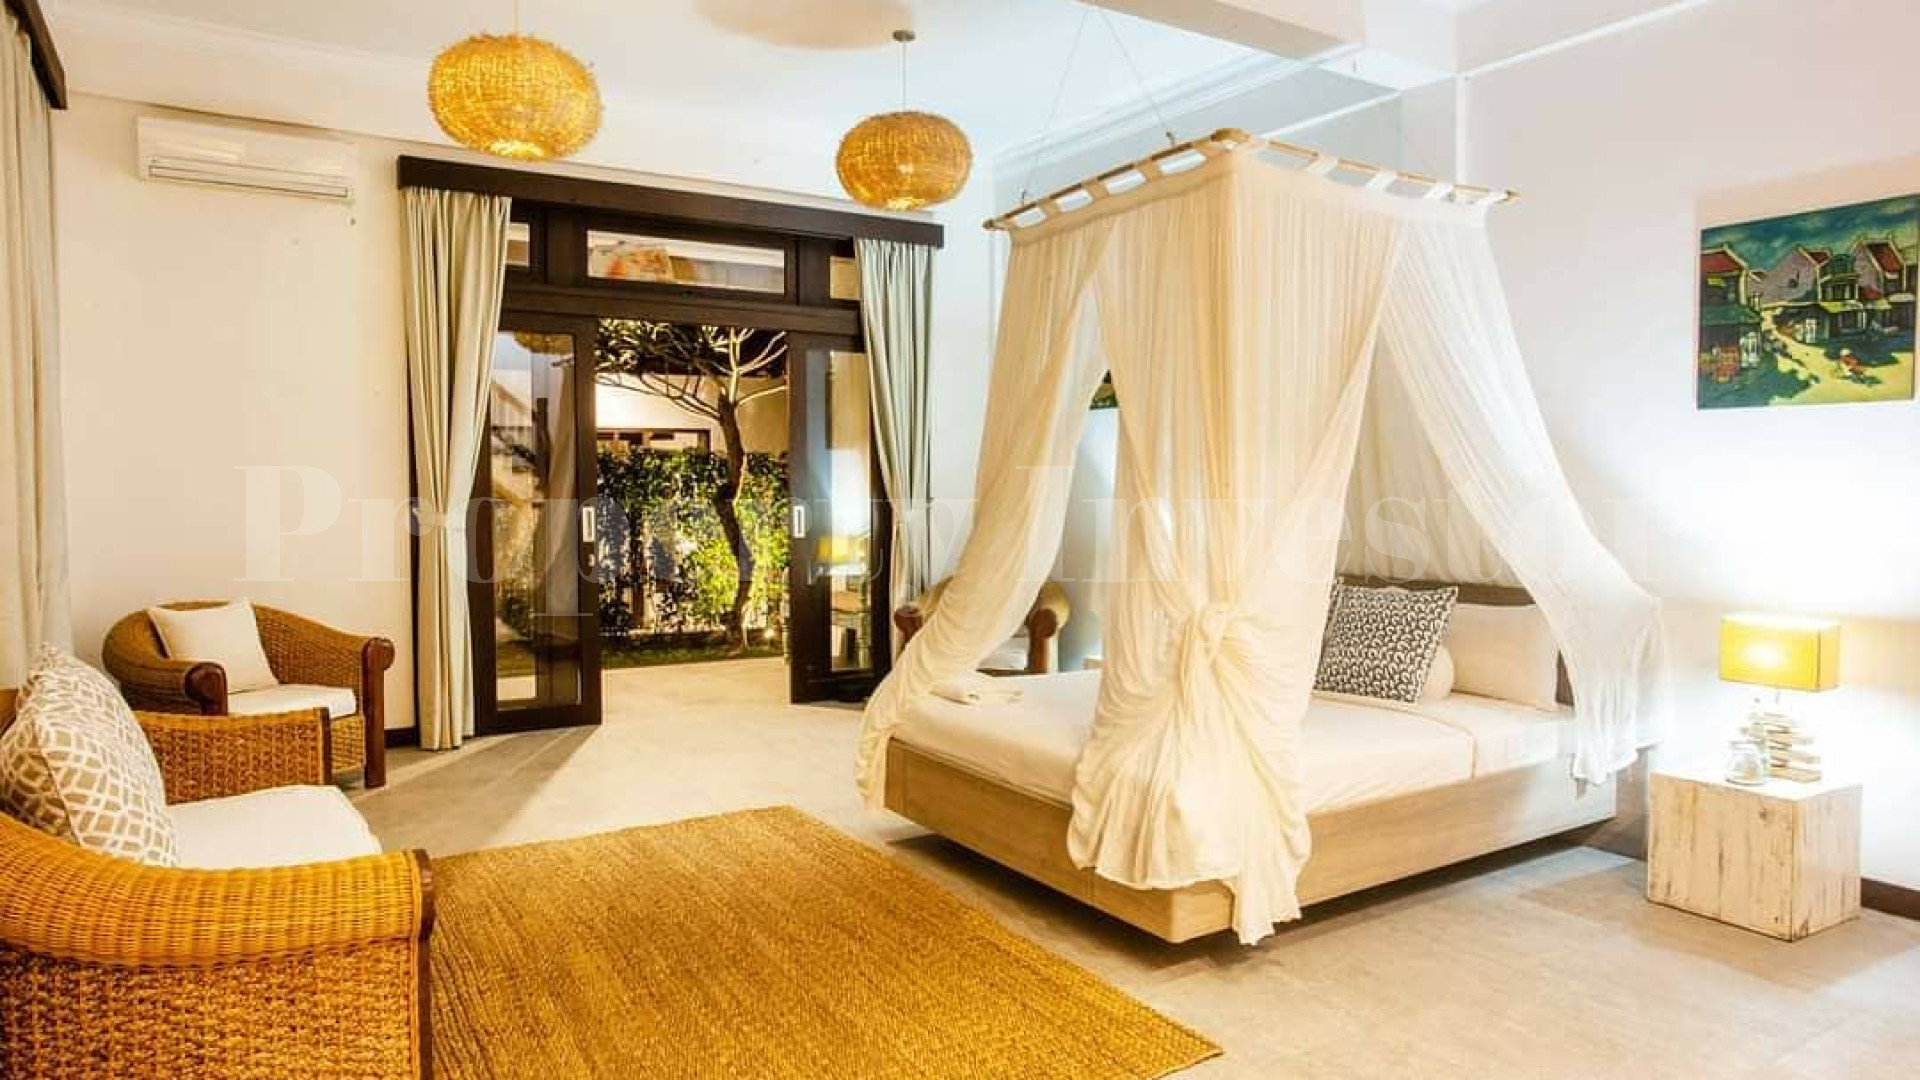 Просторная современная вилла в балийском стиле на 7 спален с лицензией отеля в Чемаги, Бали